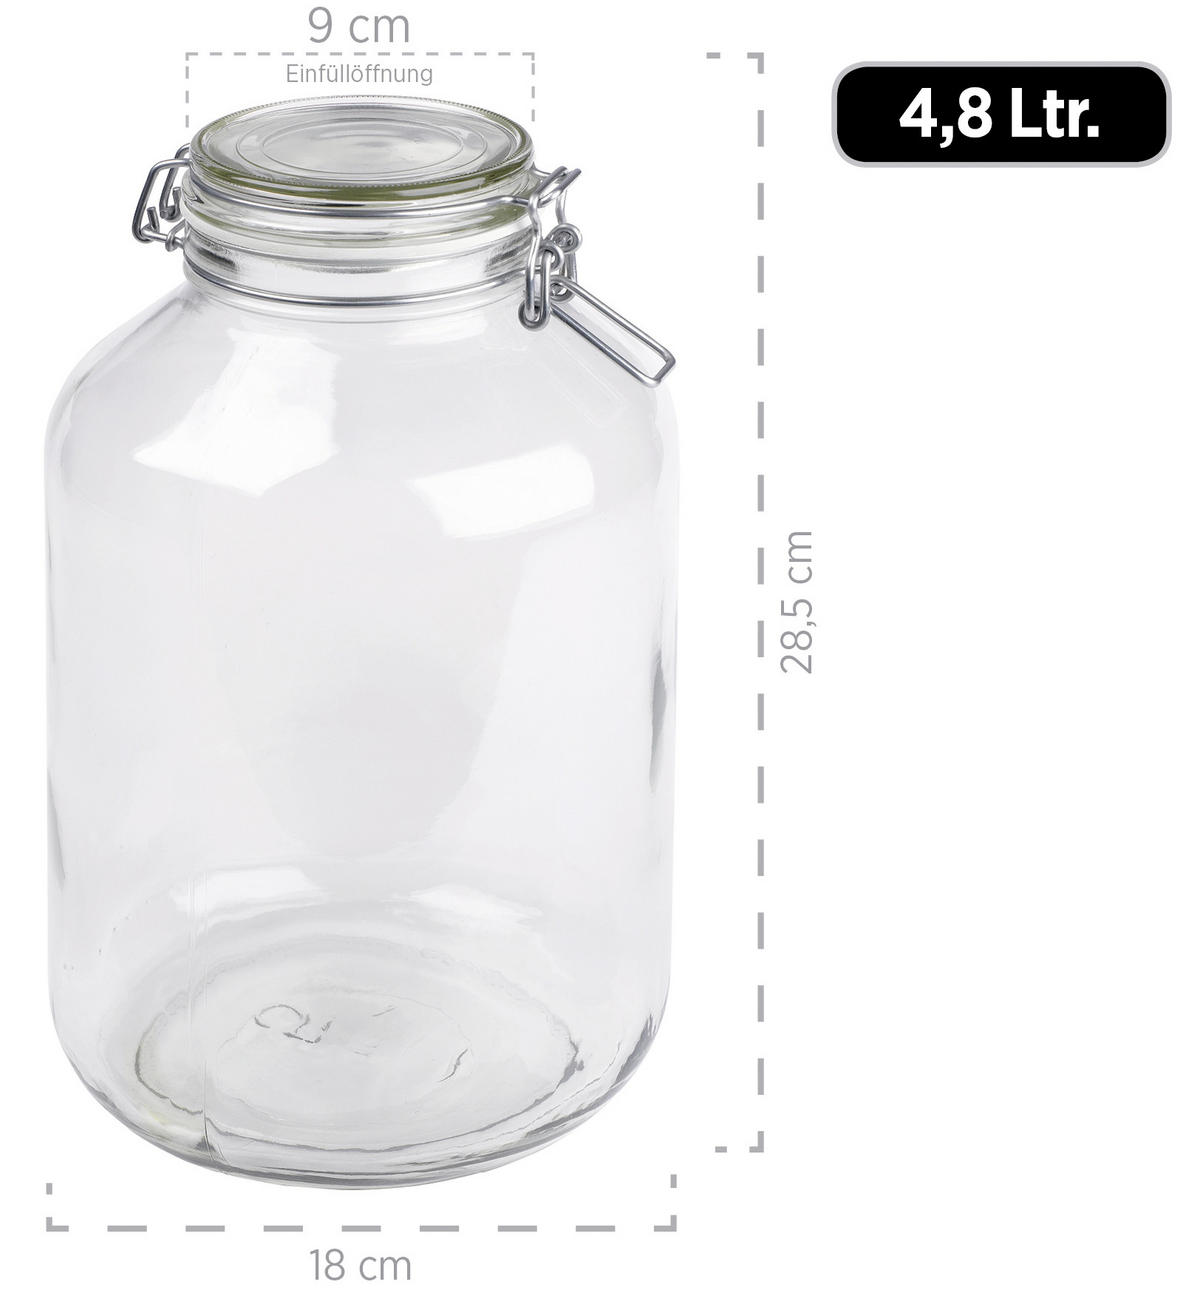 Einmachglas-Set 2-teilig 4,8 Liter kaufen online